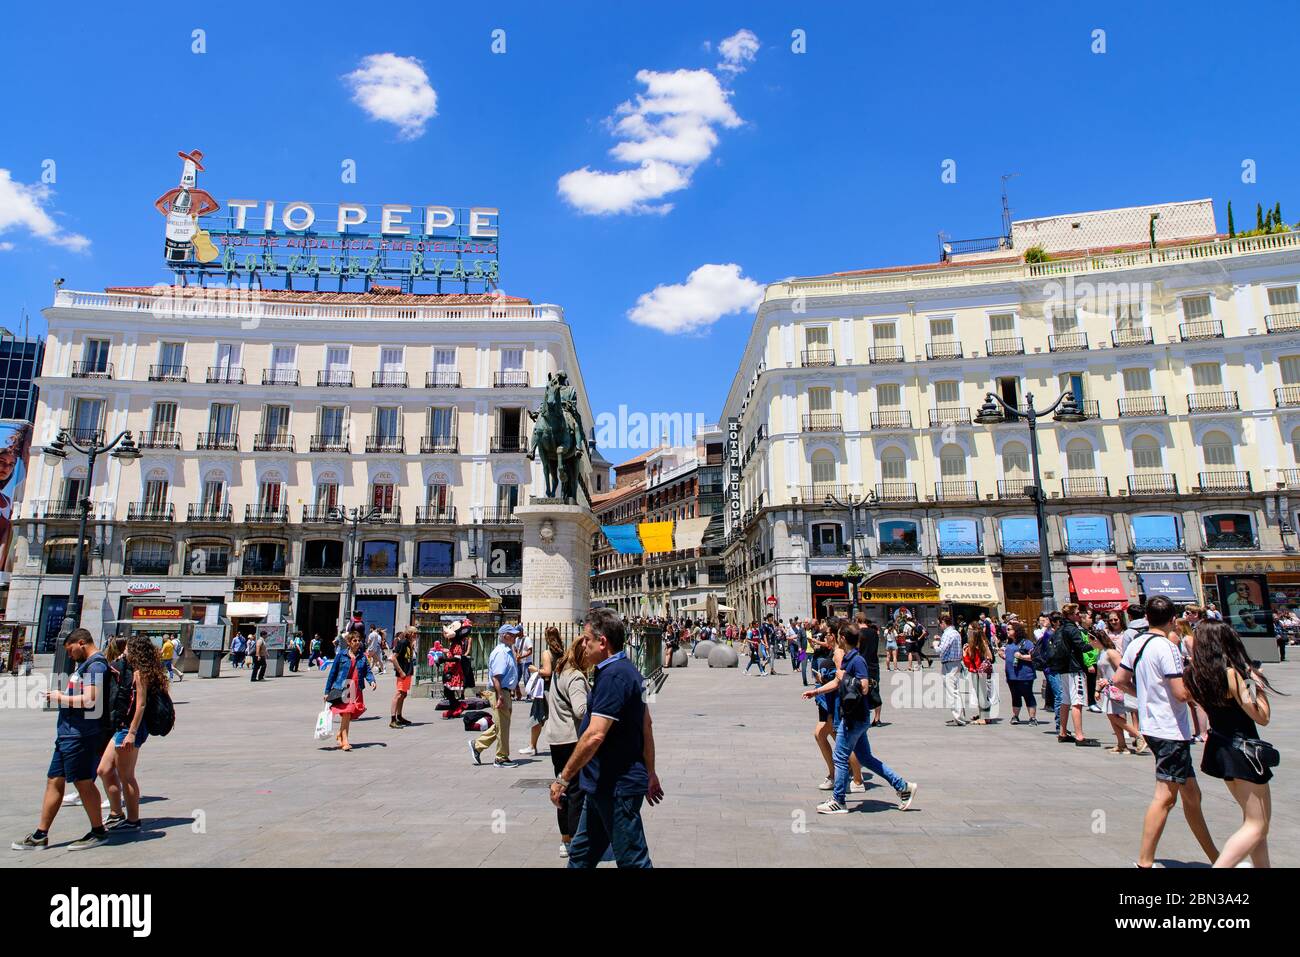 Puerta del sol (Tor der Sonne), ein öffentlicher Platz in Madrid, Spanien Stockfoto